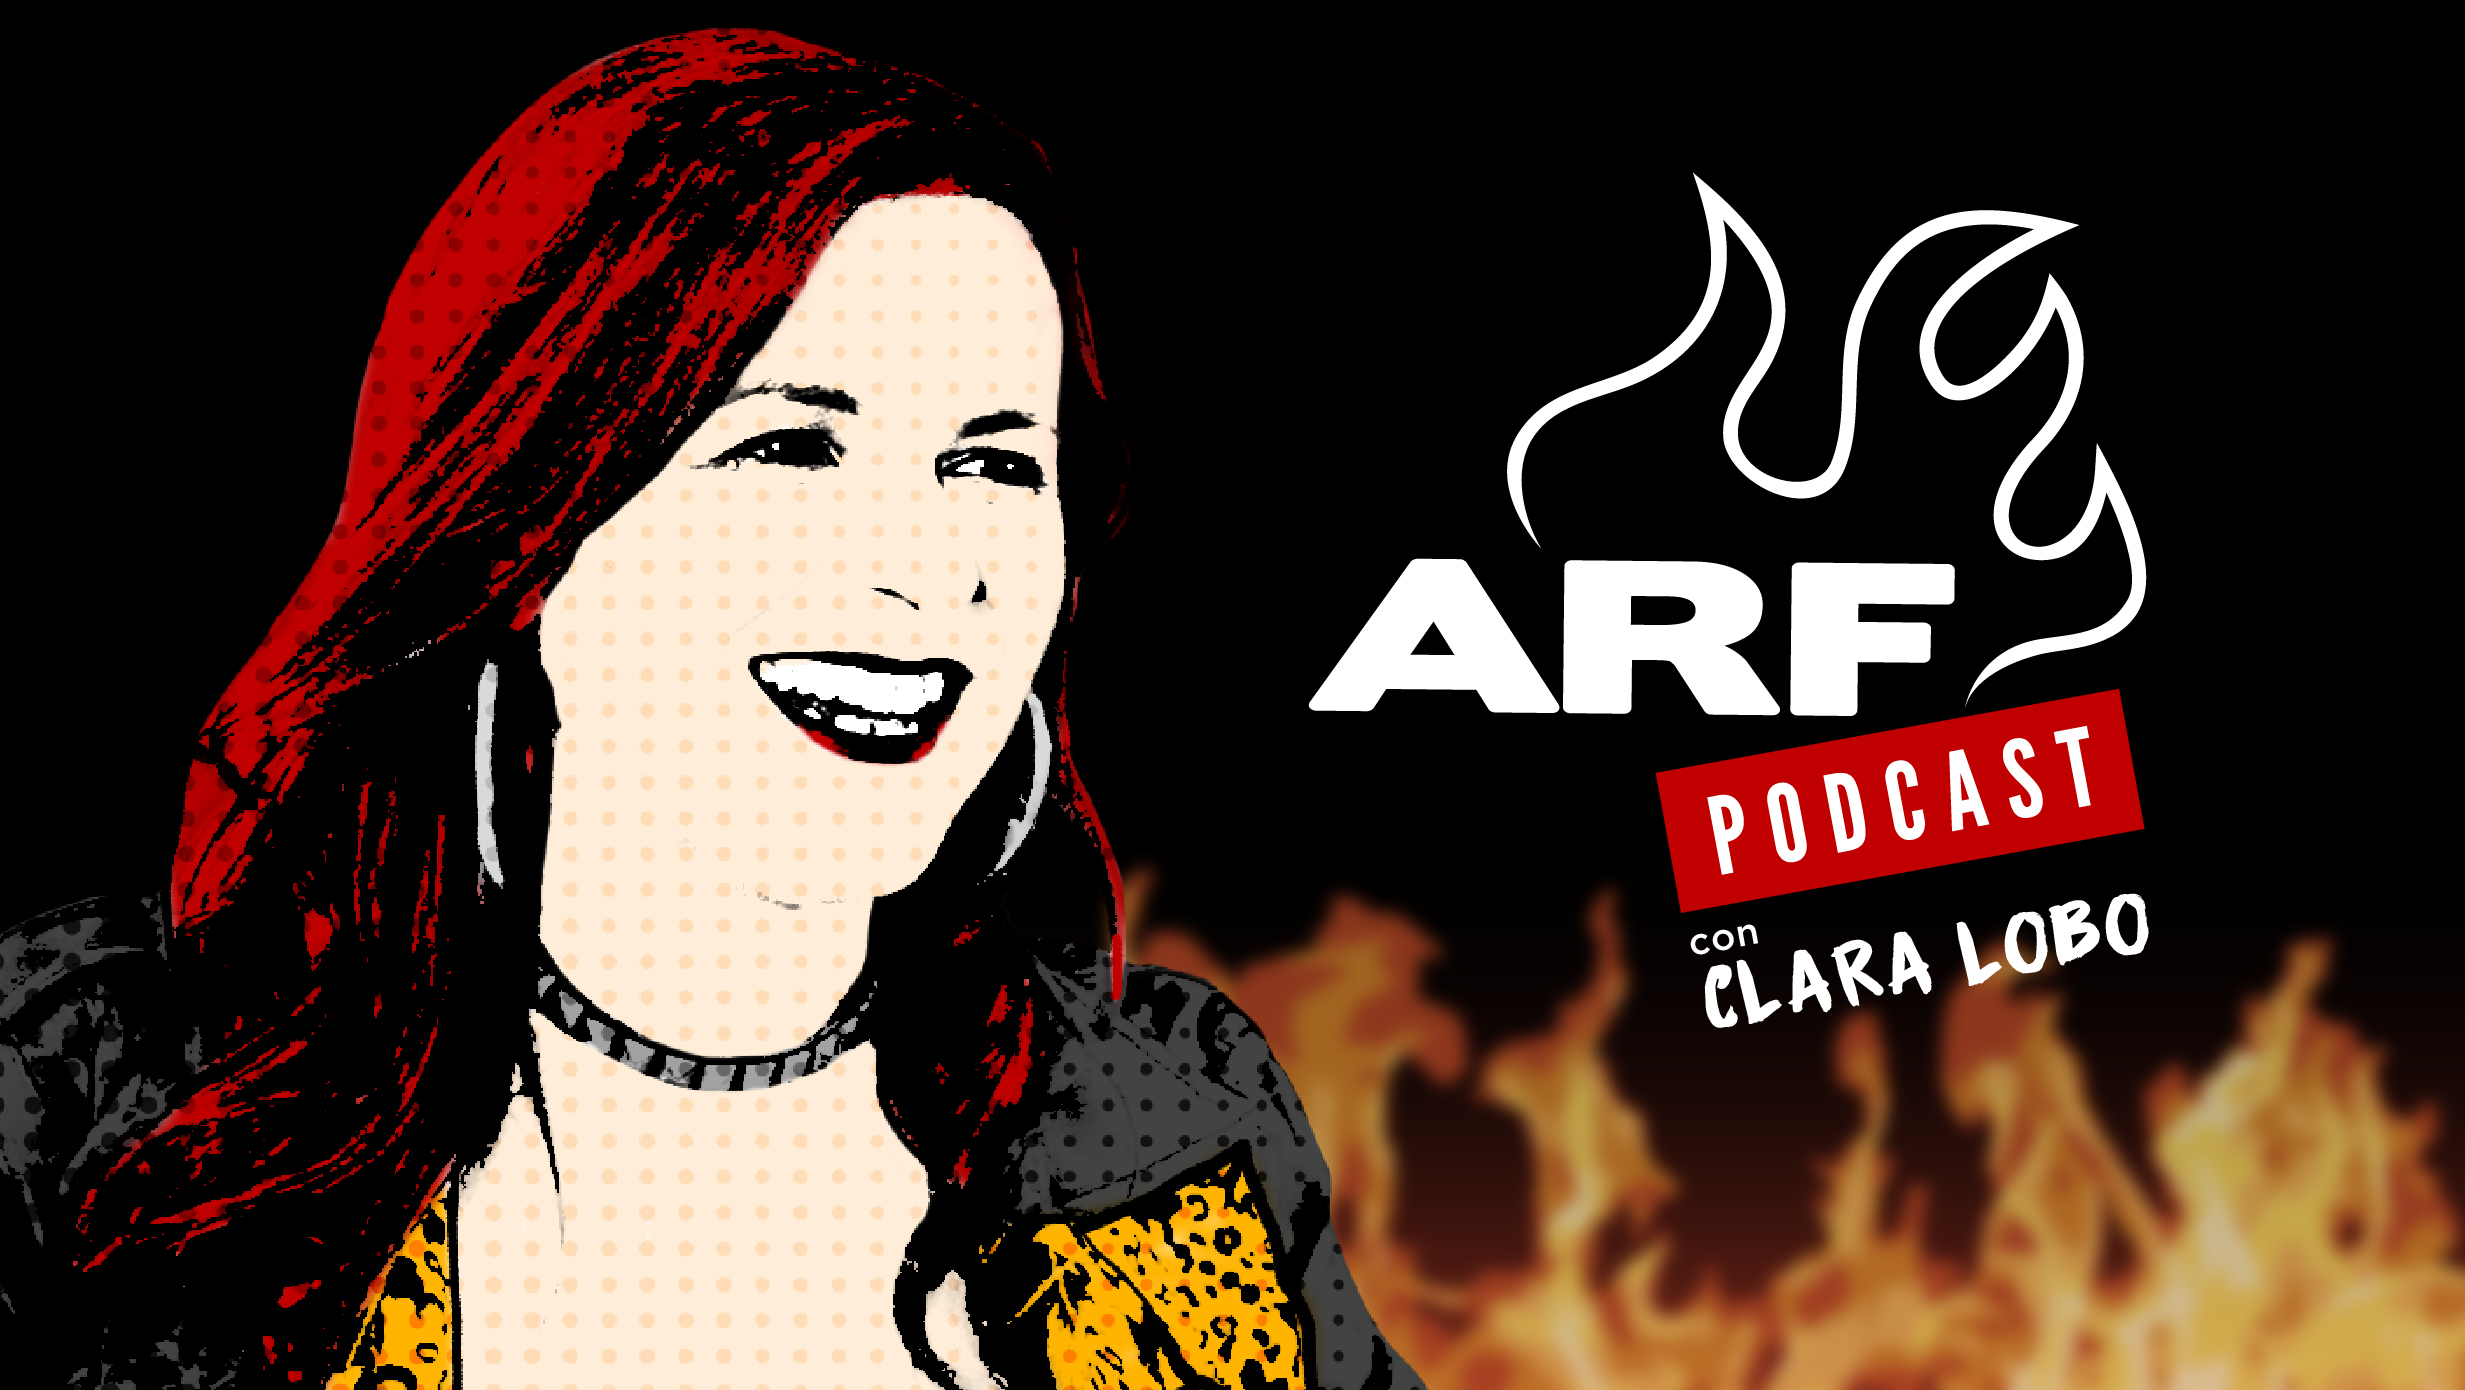 Caratula de ARF el Podcast con Clara Lobo